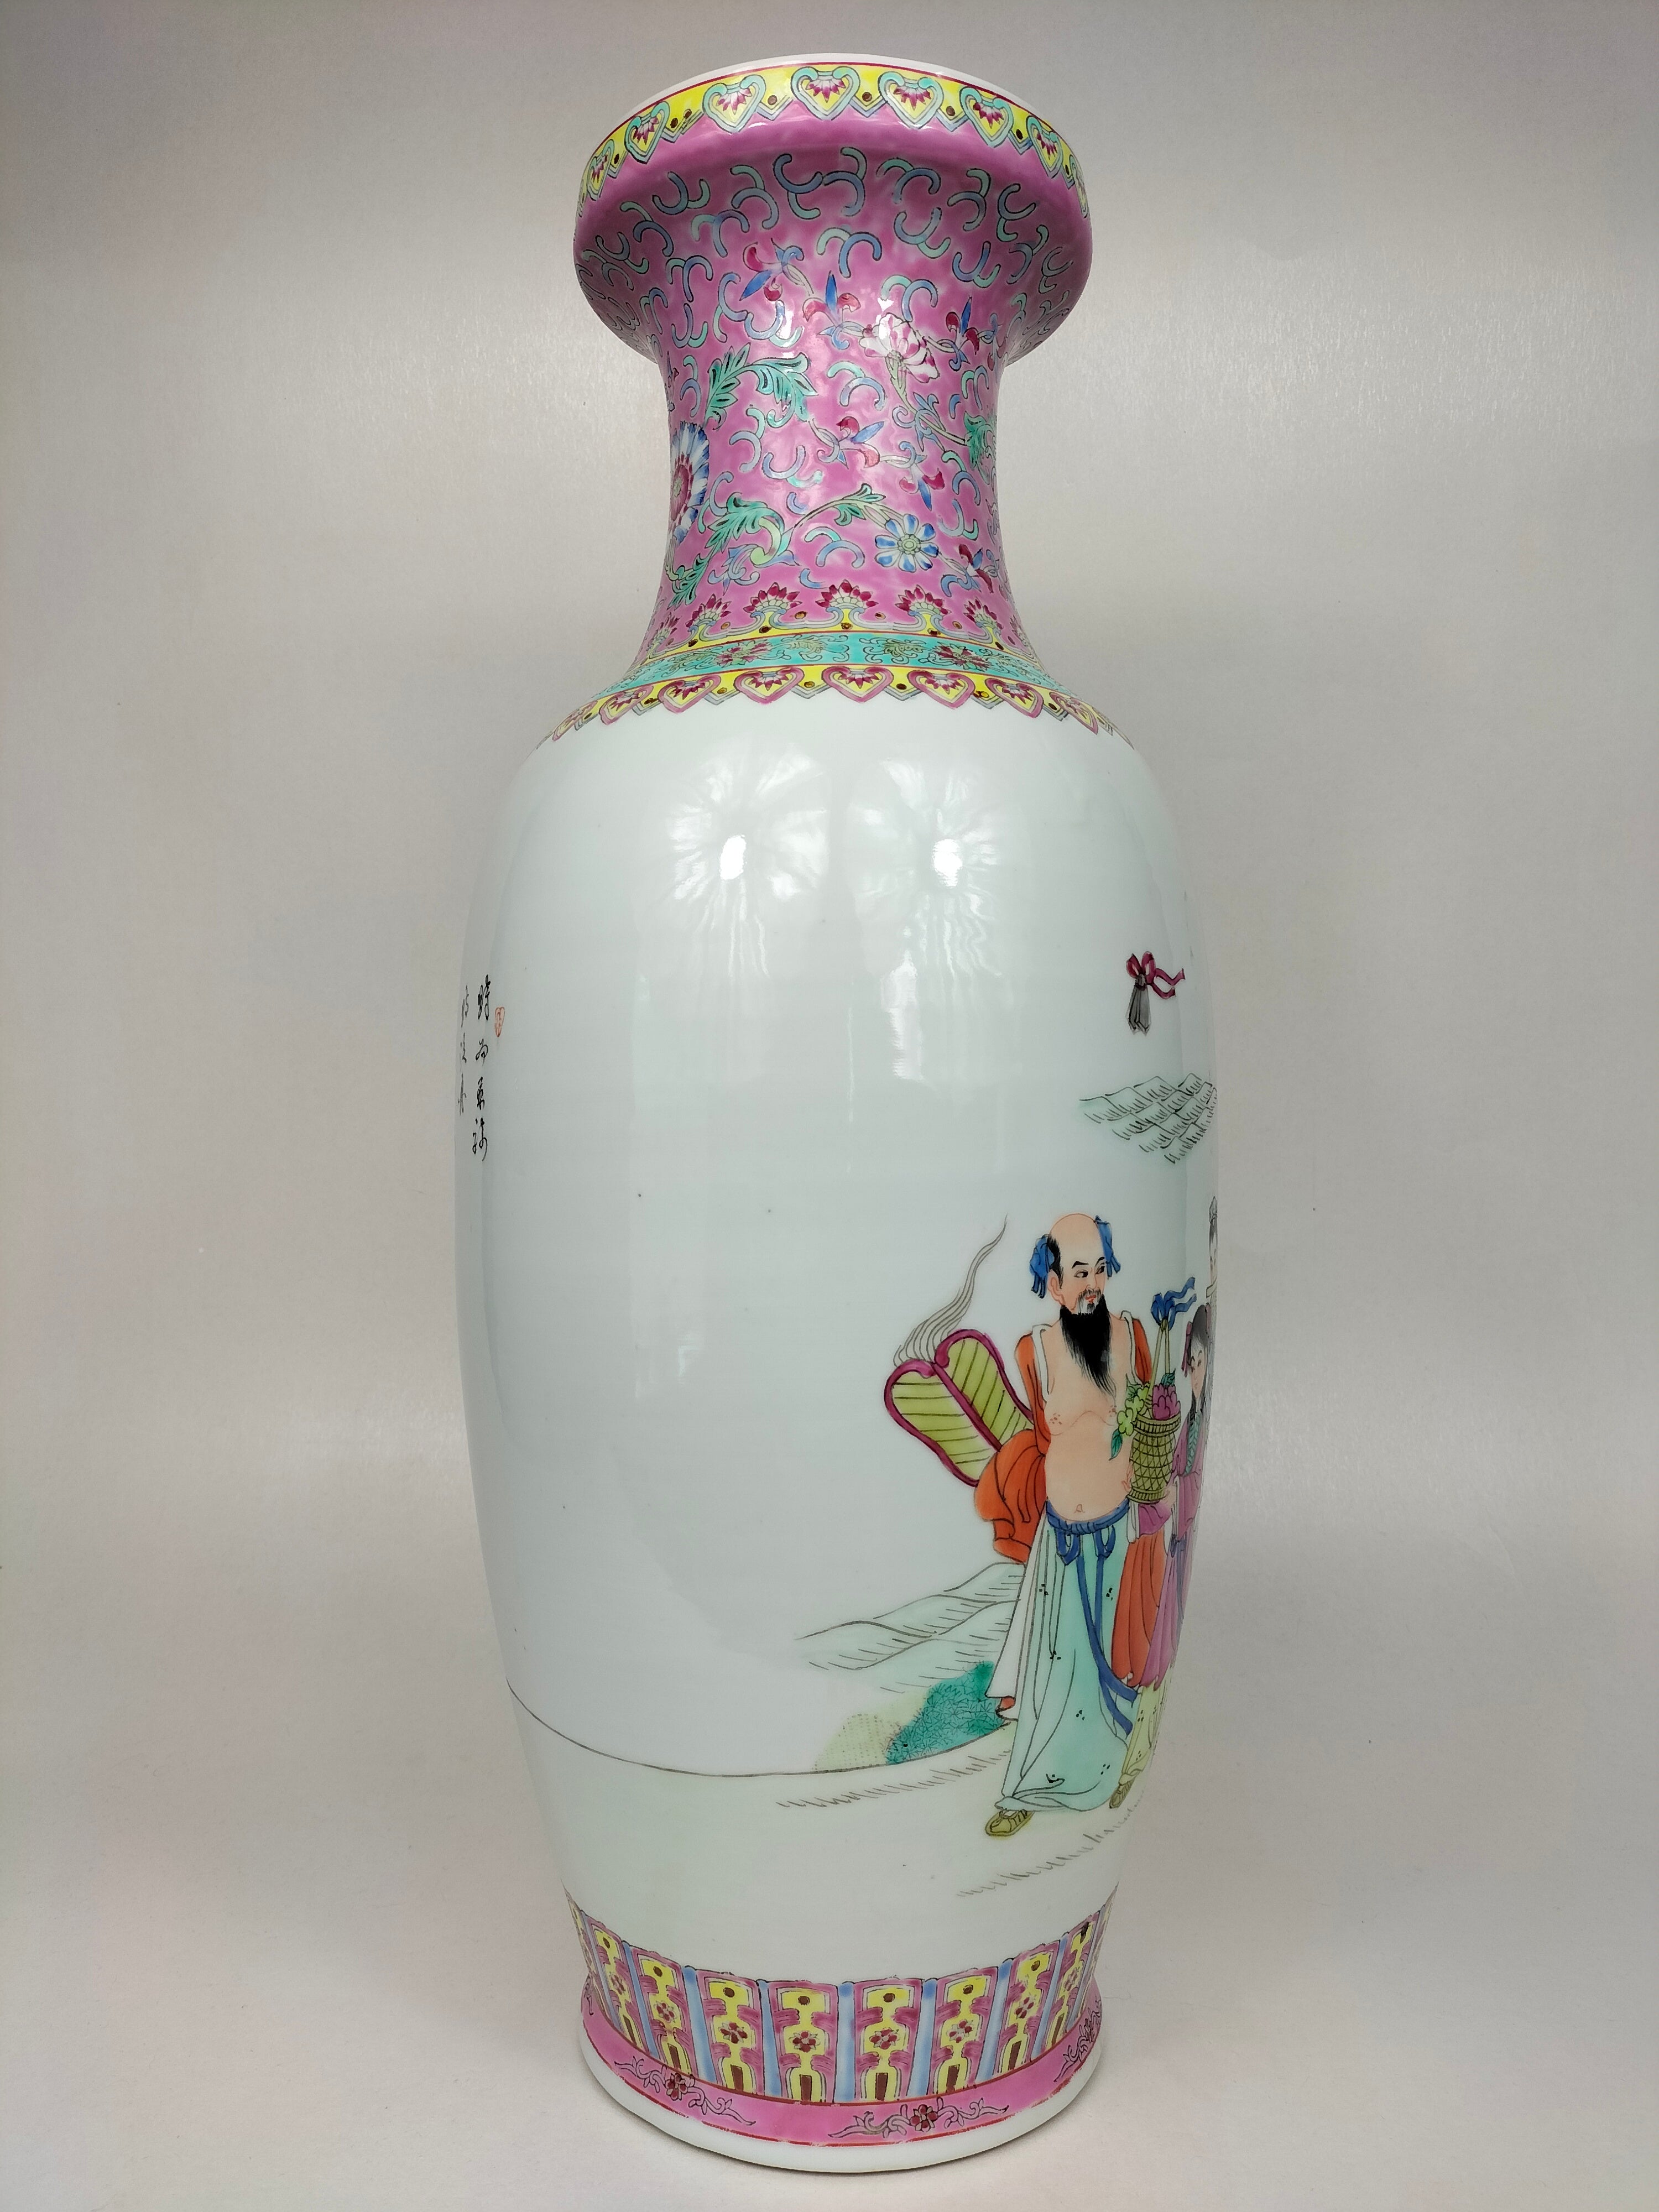 装饰八仙的大型中国粉彩花瓶 // 景德镇 - 20 世纪